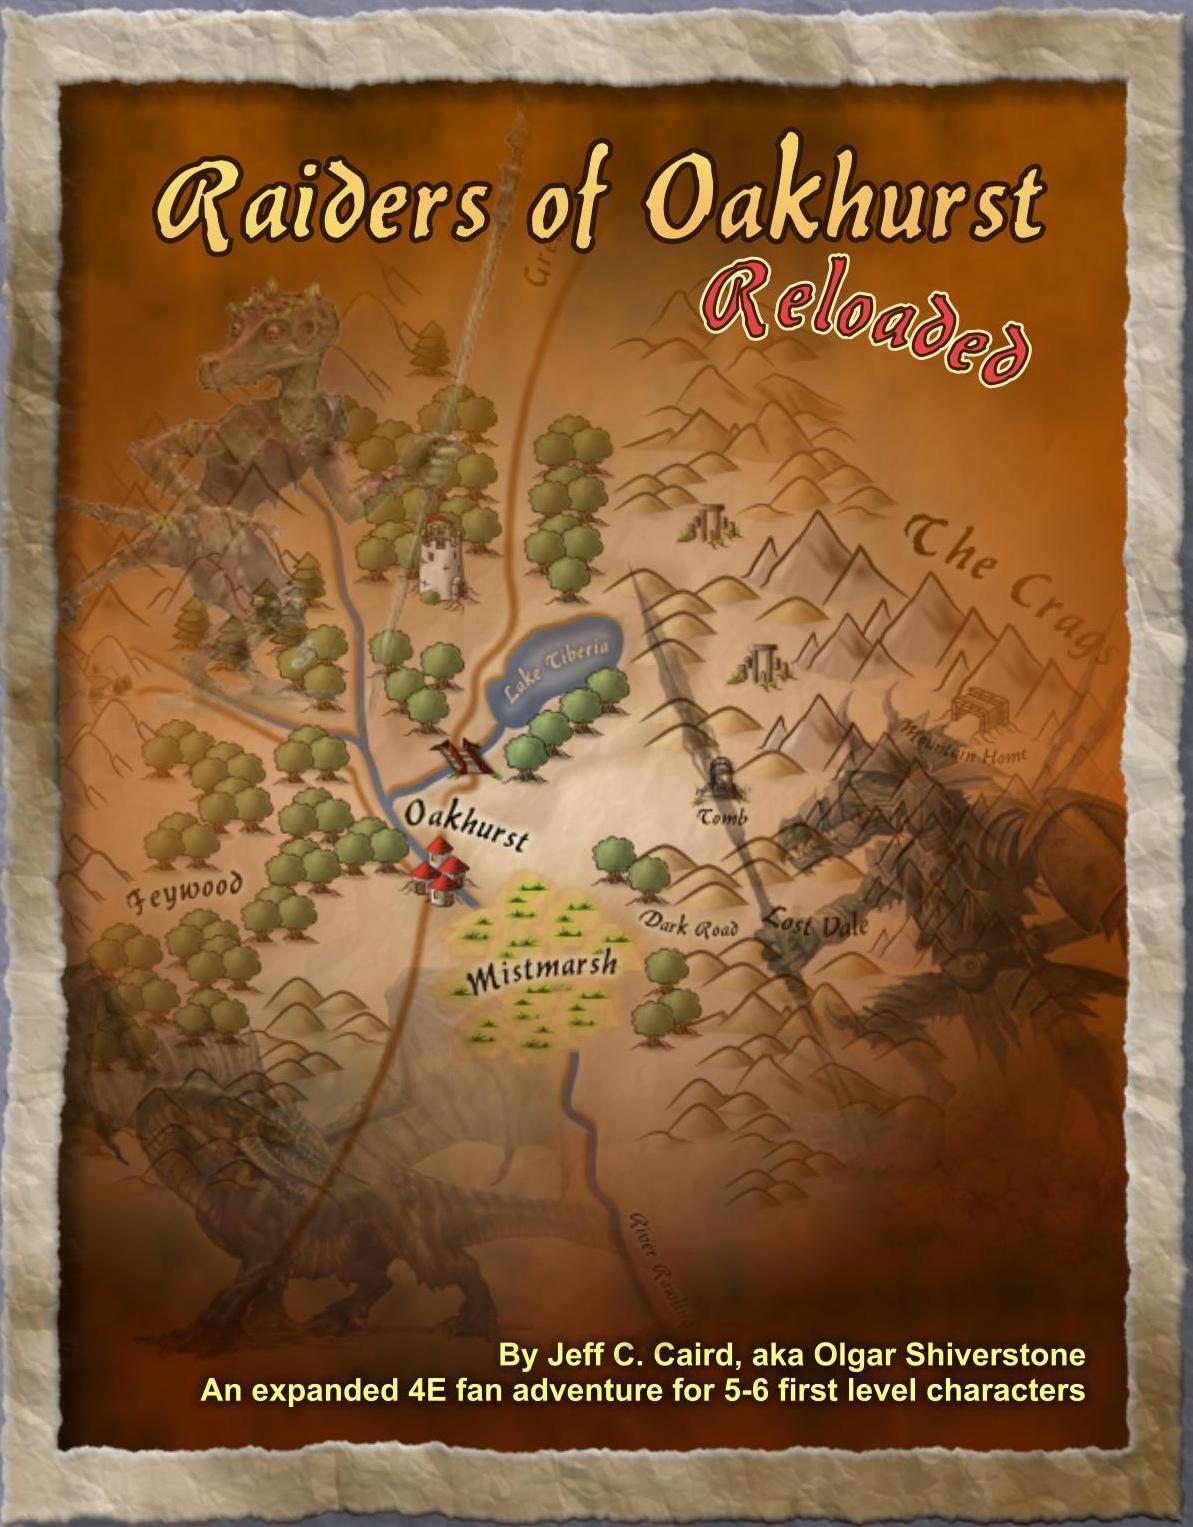 1610-Raiders of Oakhurst Reloaded picture.jpg